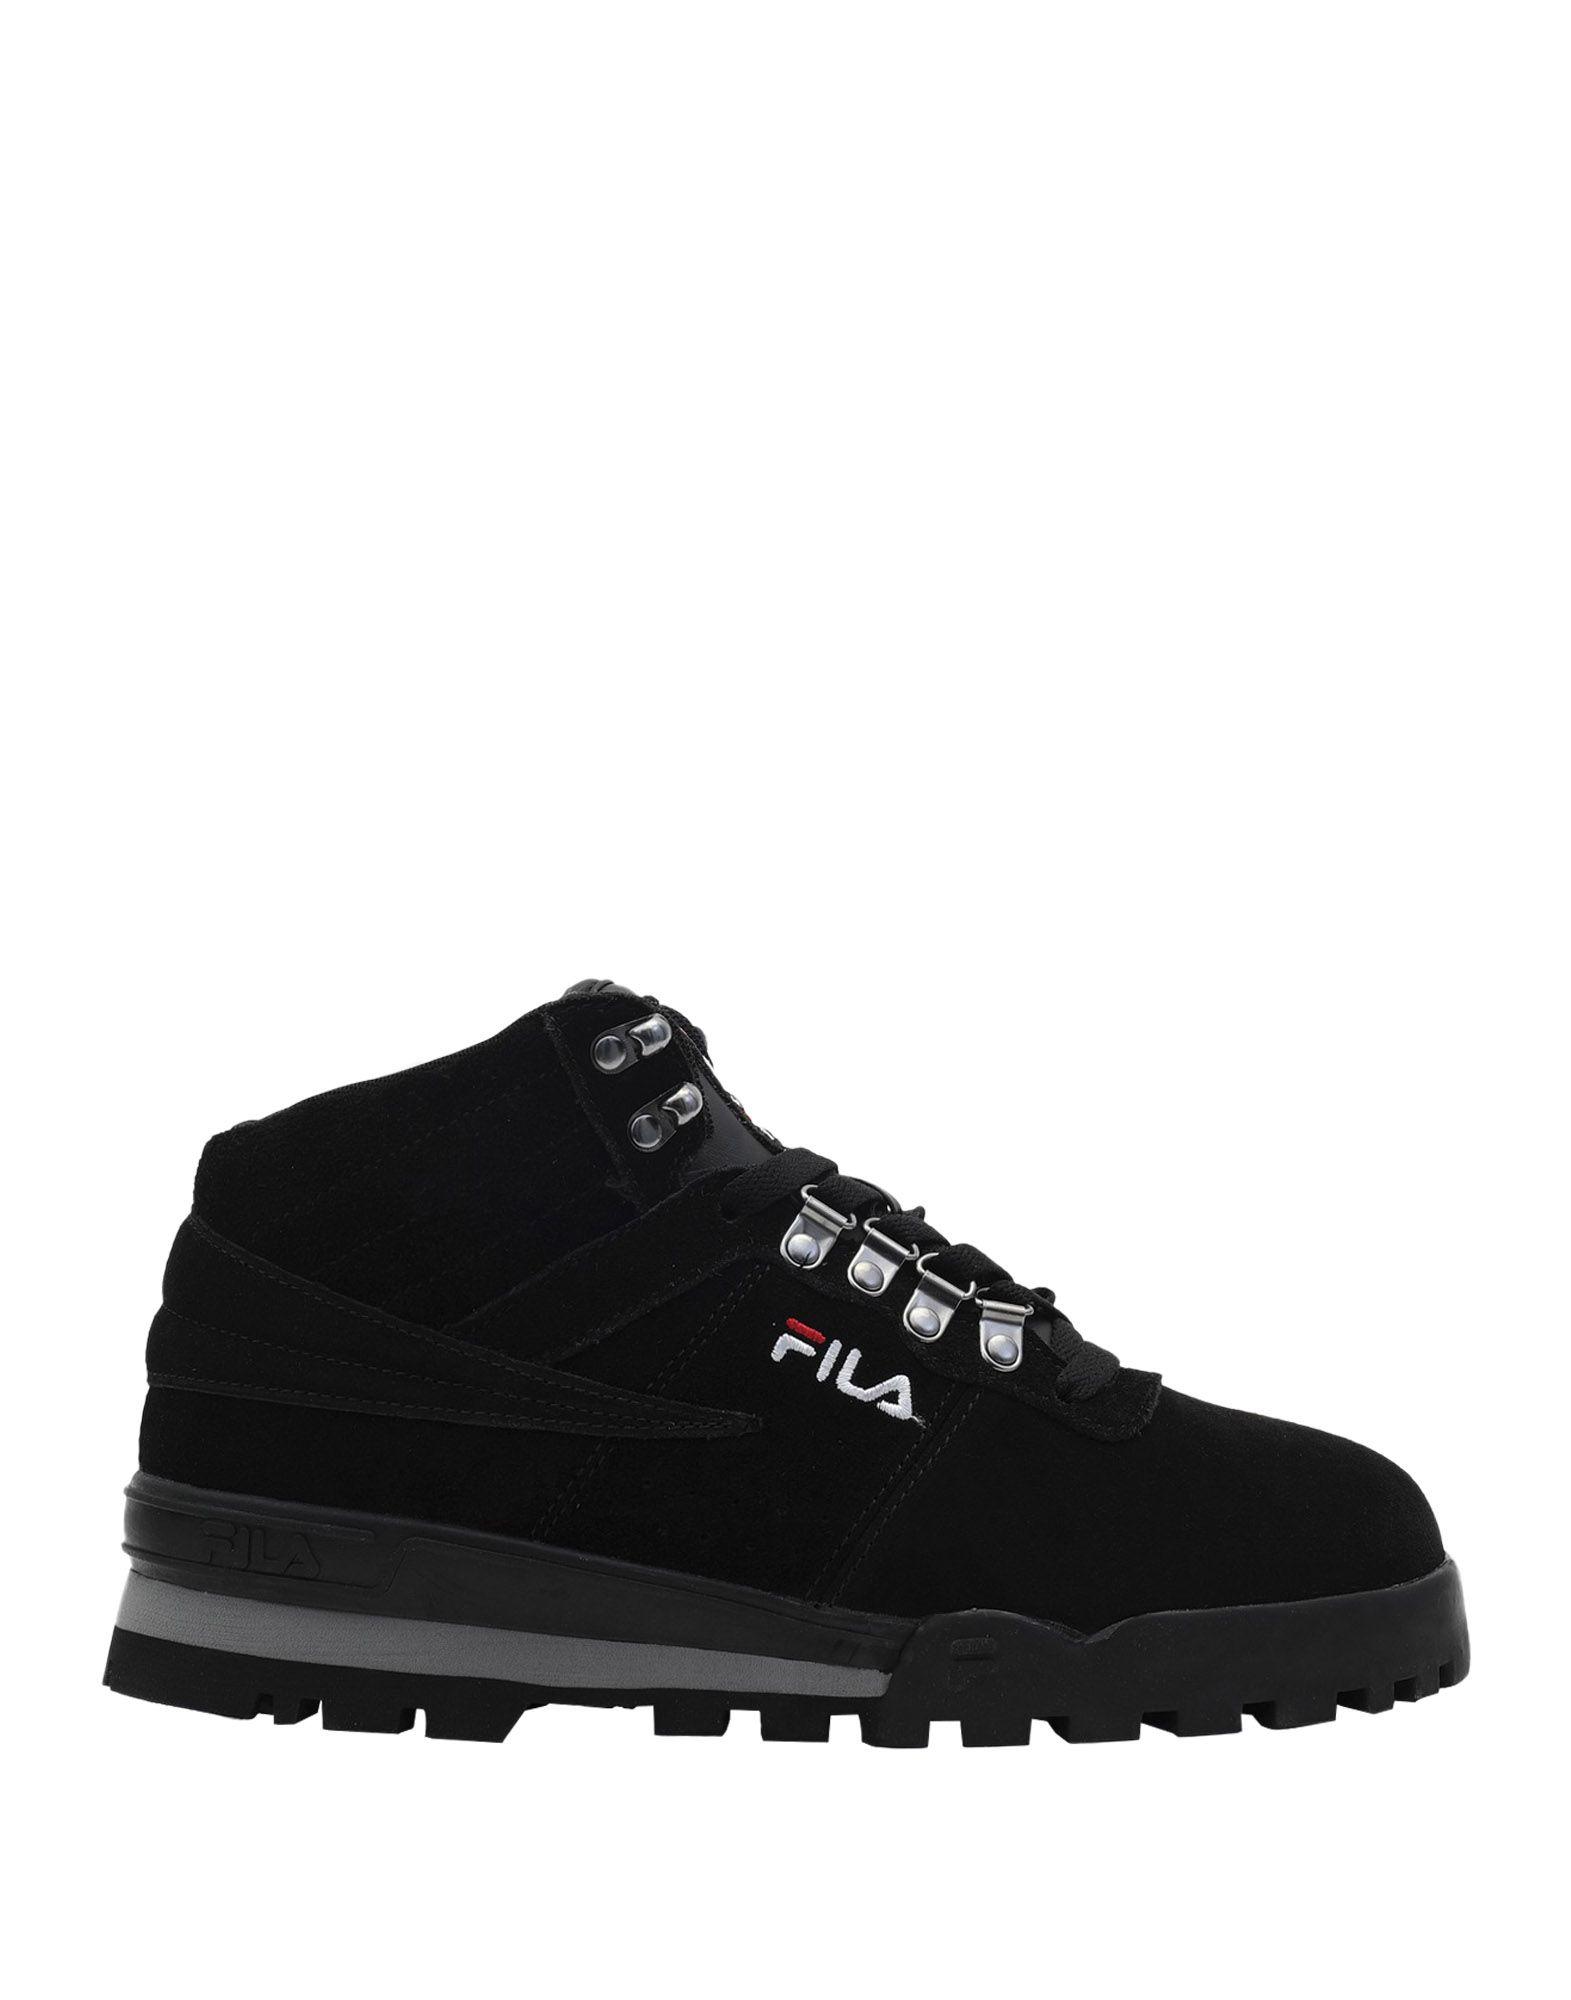 Fila Suede High-tops & Sneakers in Black - Lyst